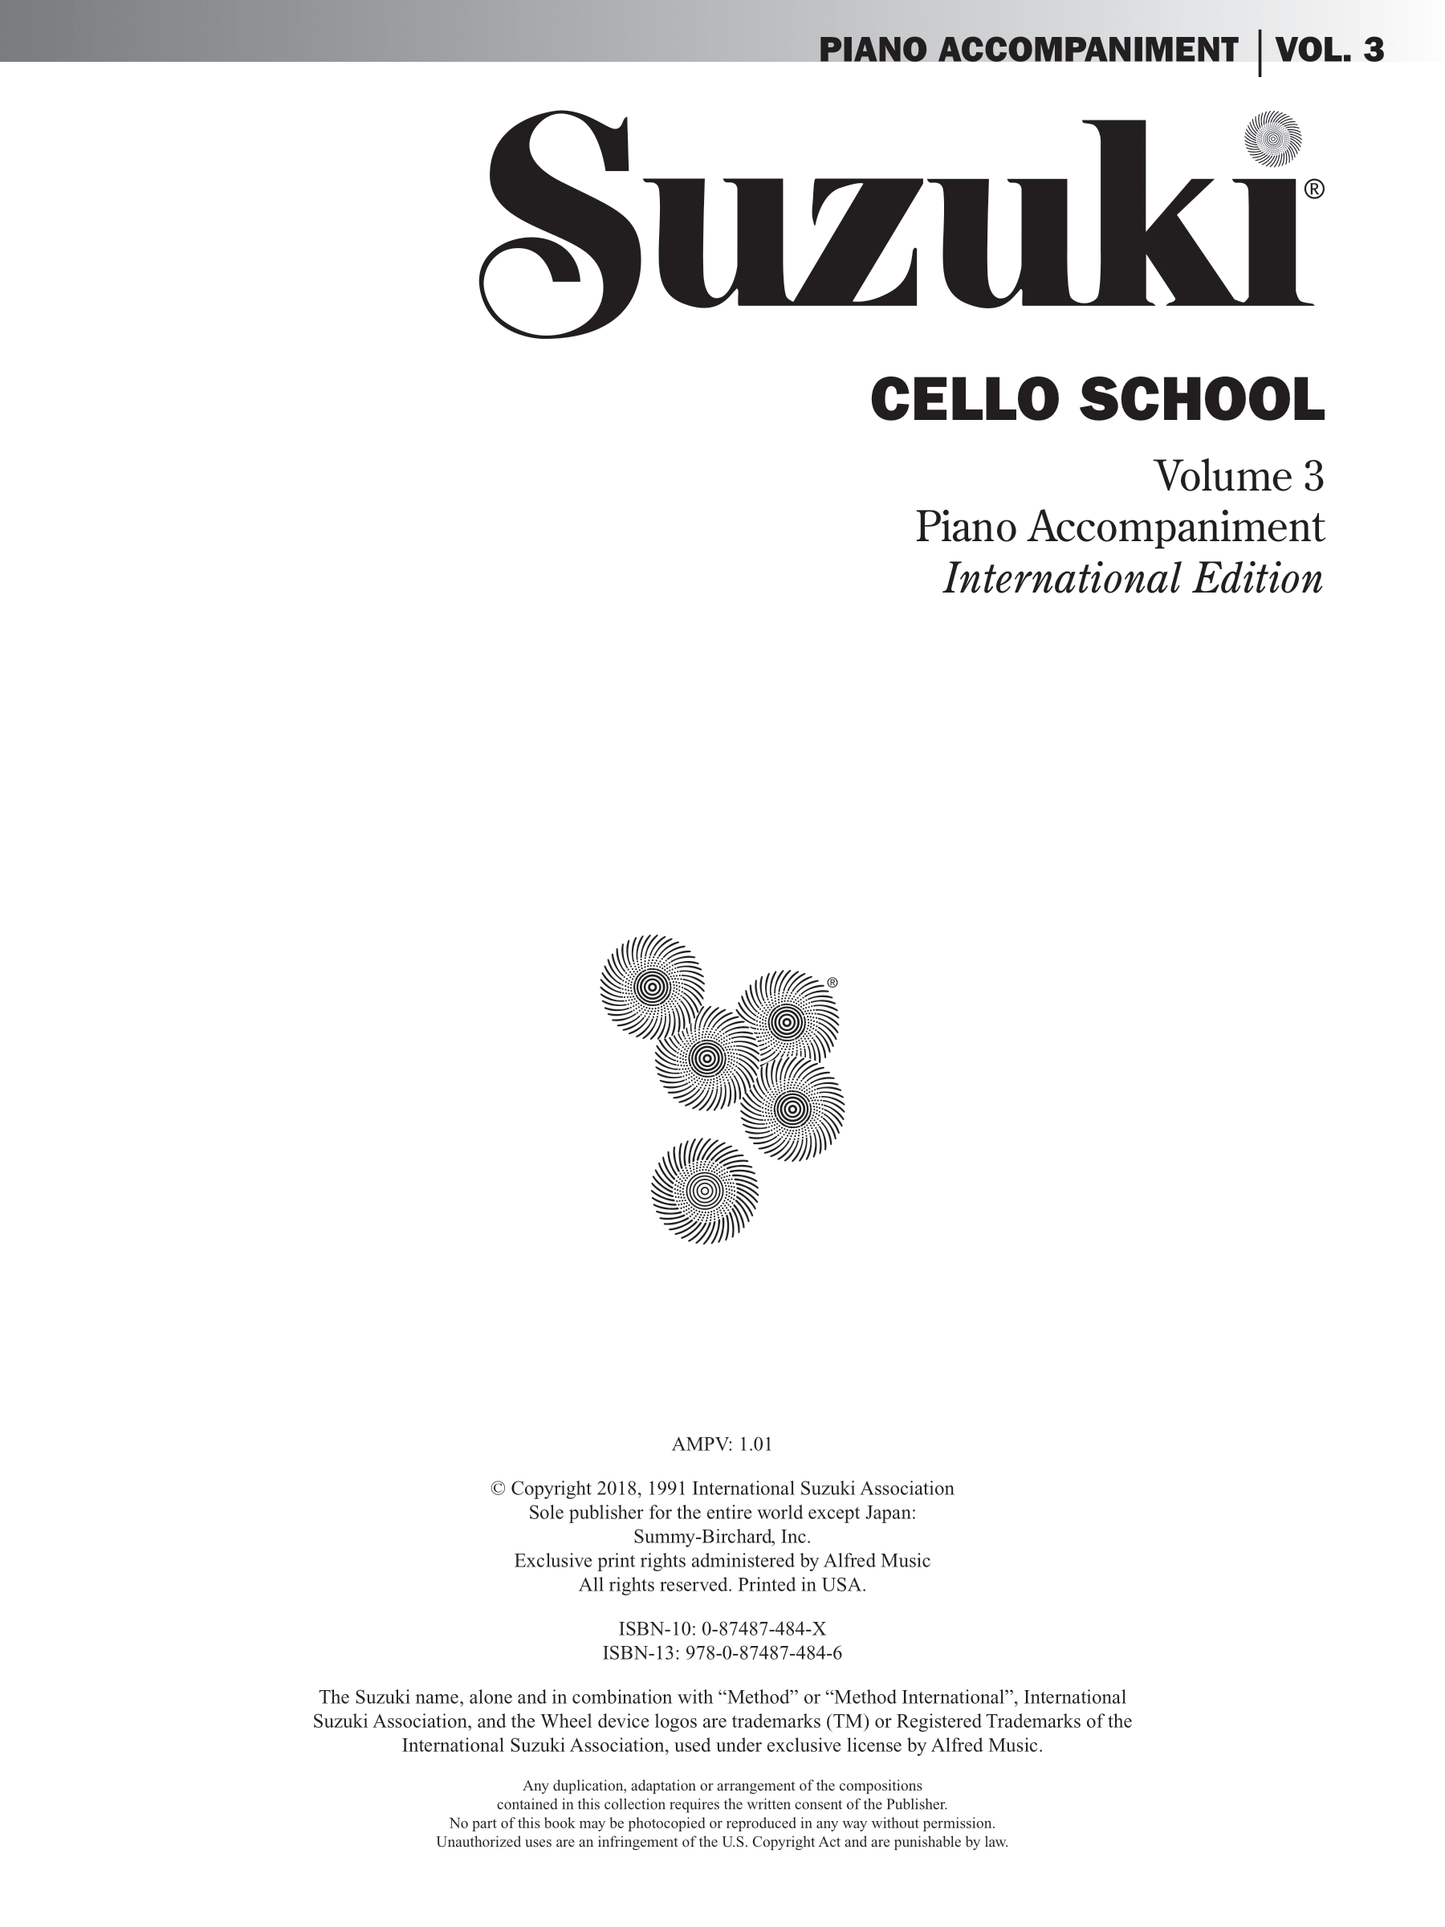 Suzuki Cello School - Volume 3 Piano Accompaniment Book